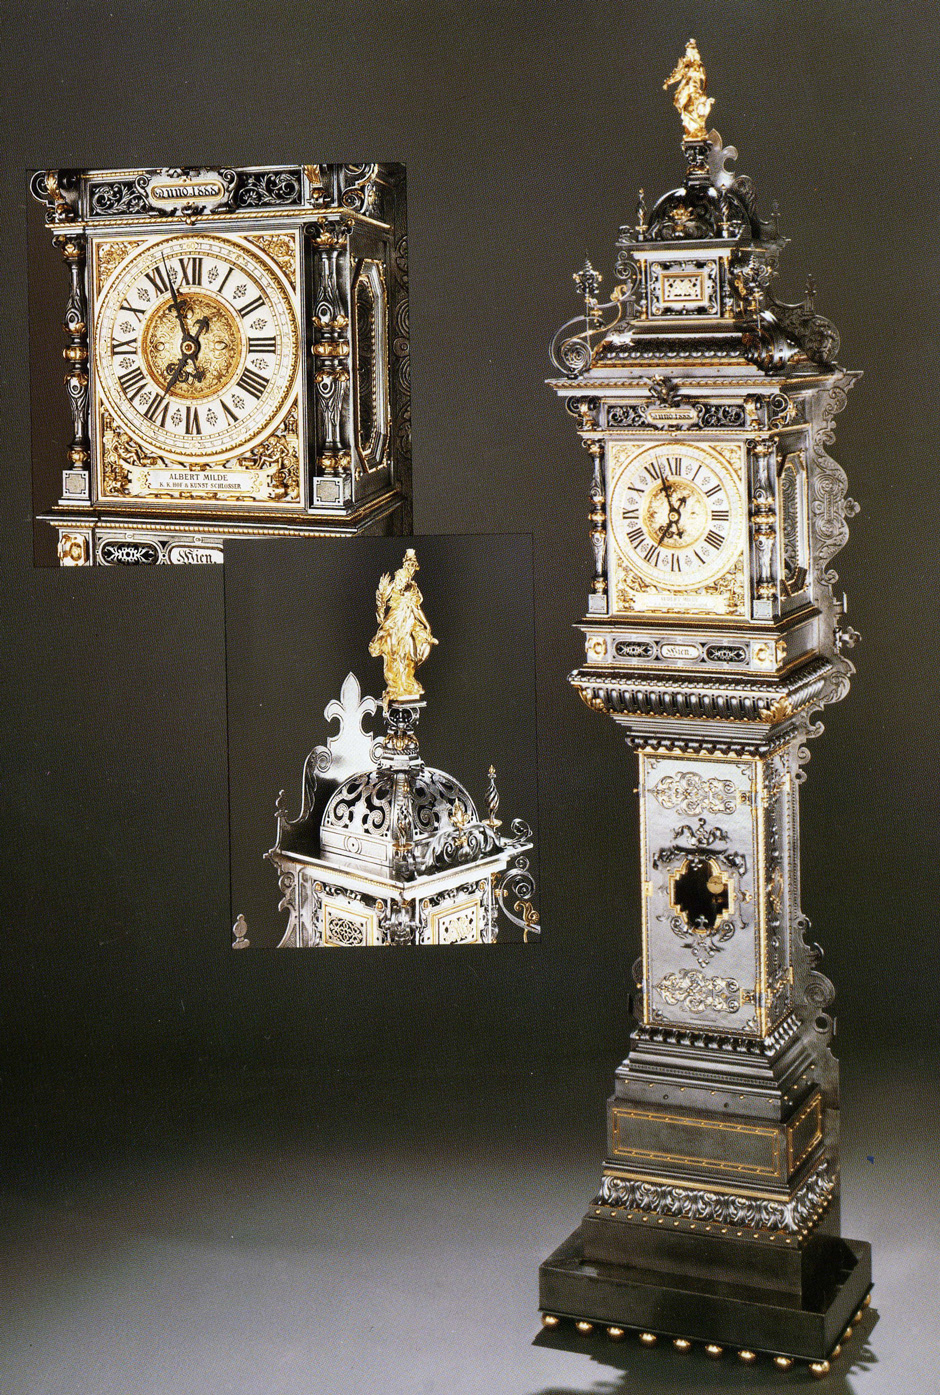 Reichverzierter Uhrkasten, 1985